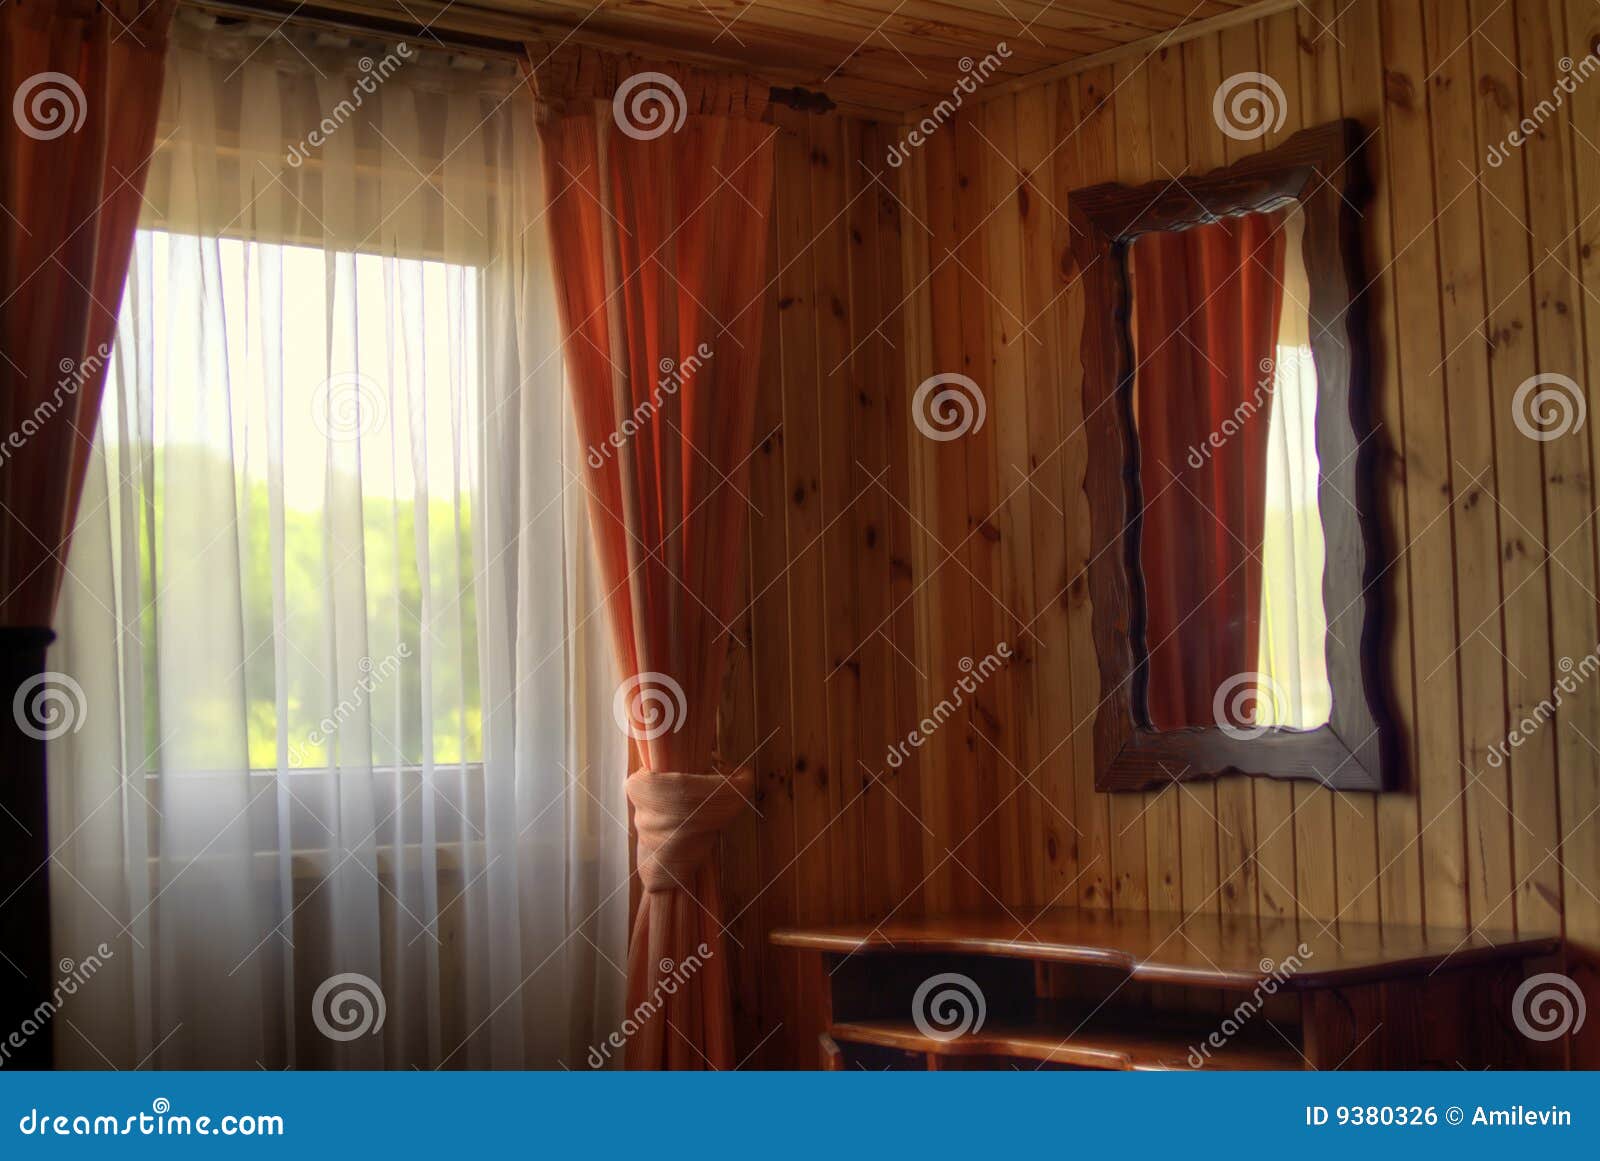 wooden hut window